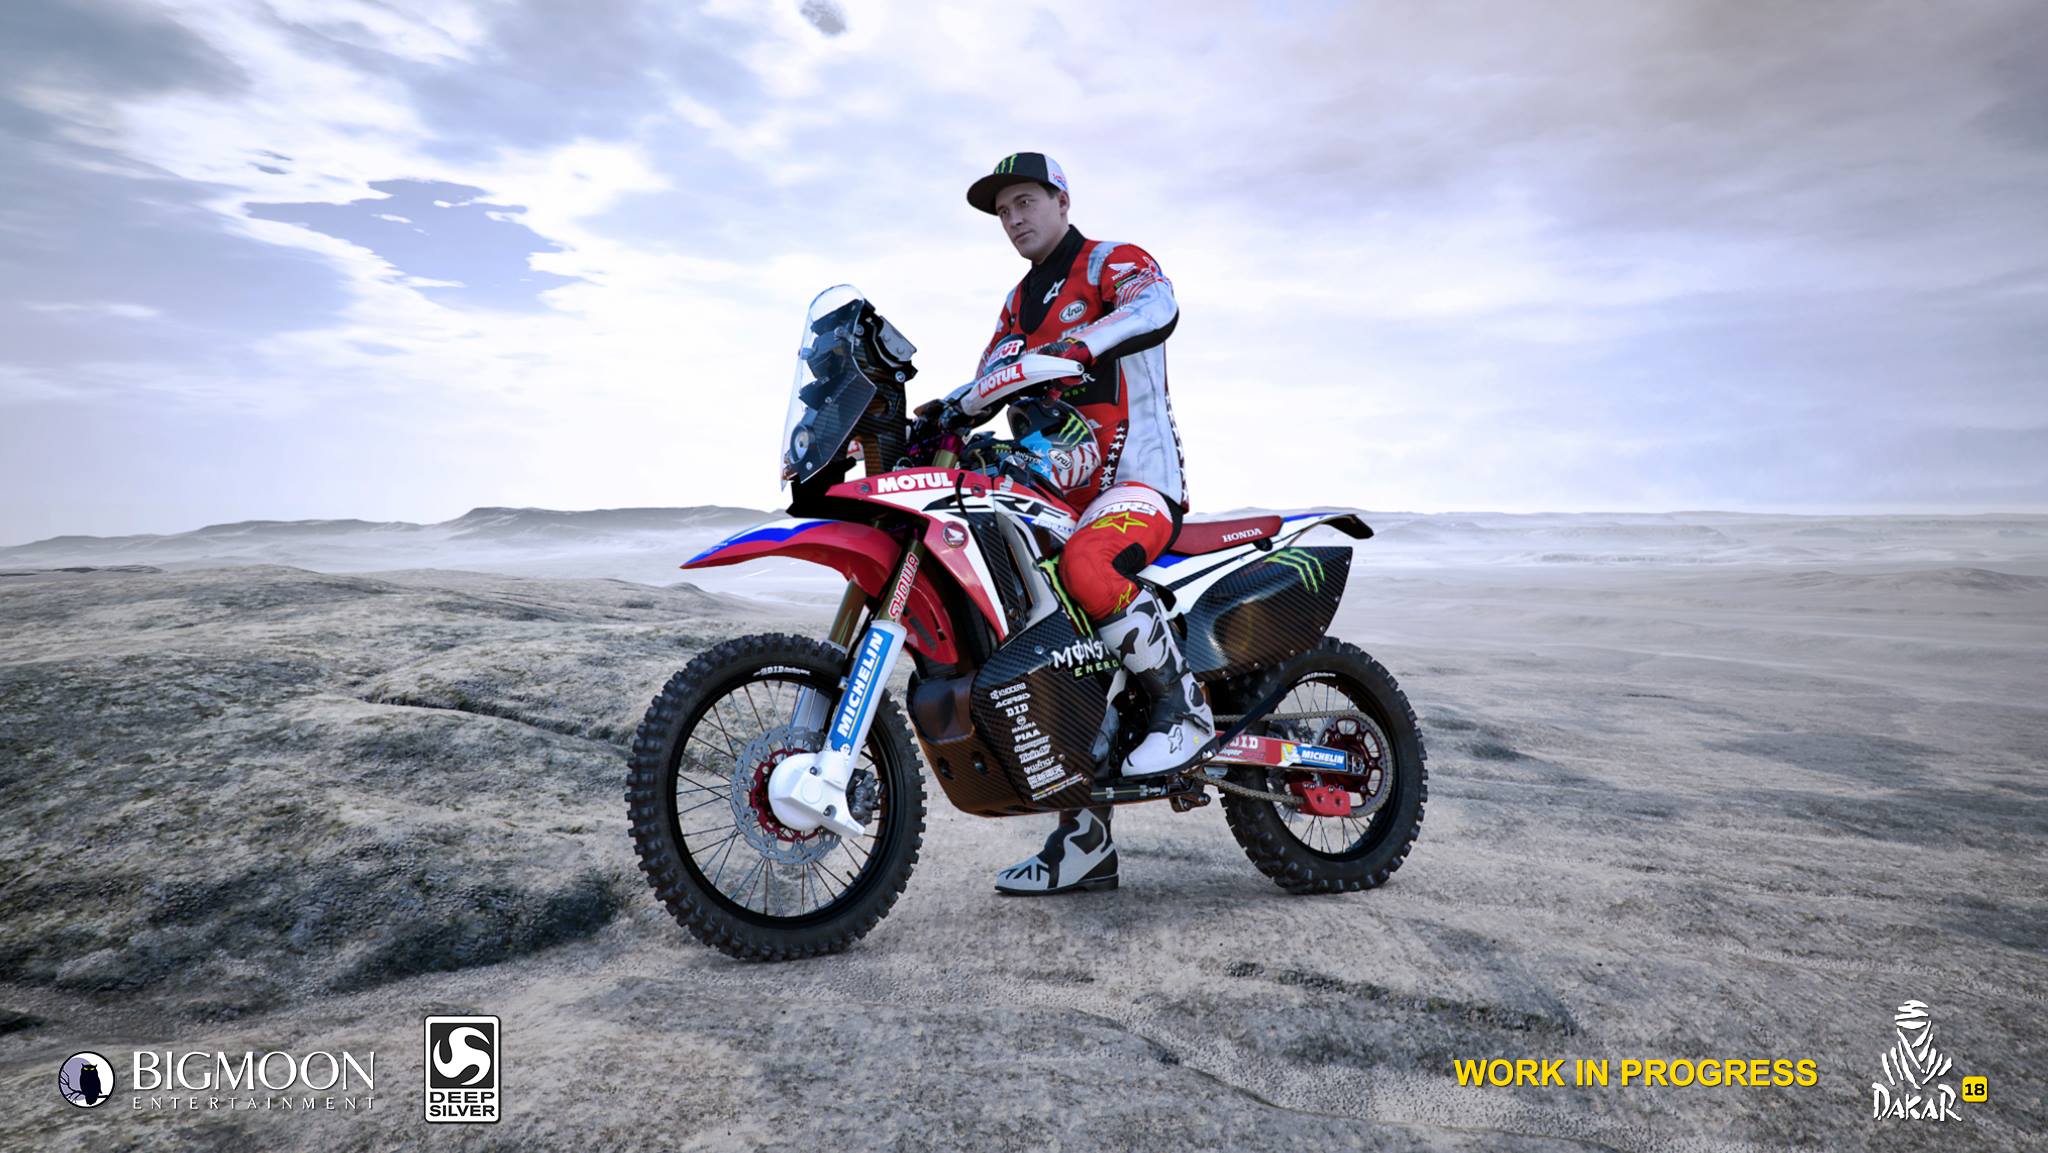 Dakar 18 , HD Wallpaper & Backgrounds